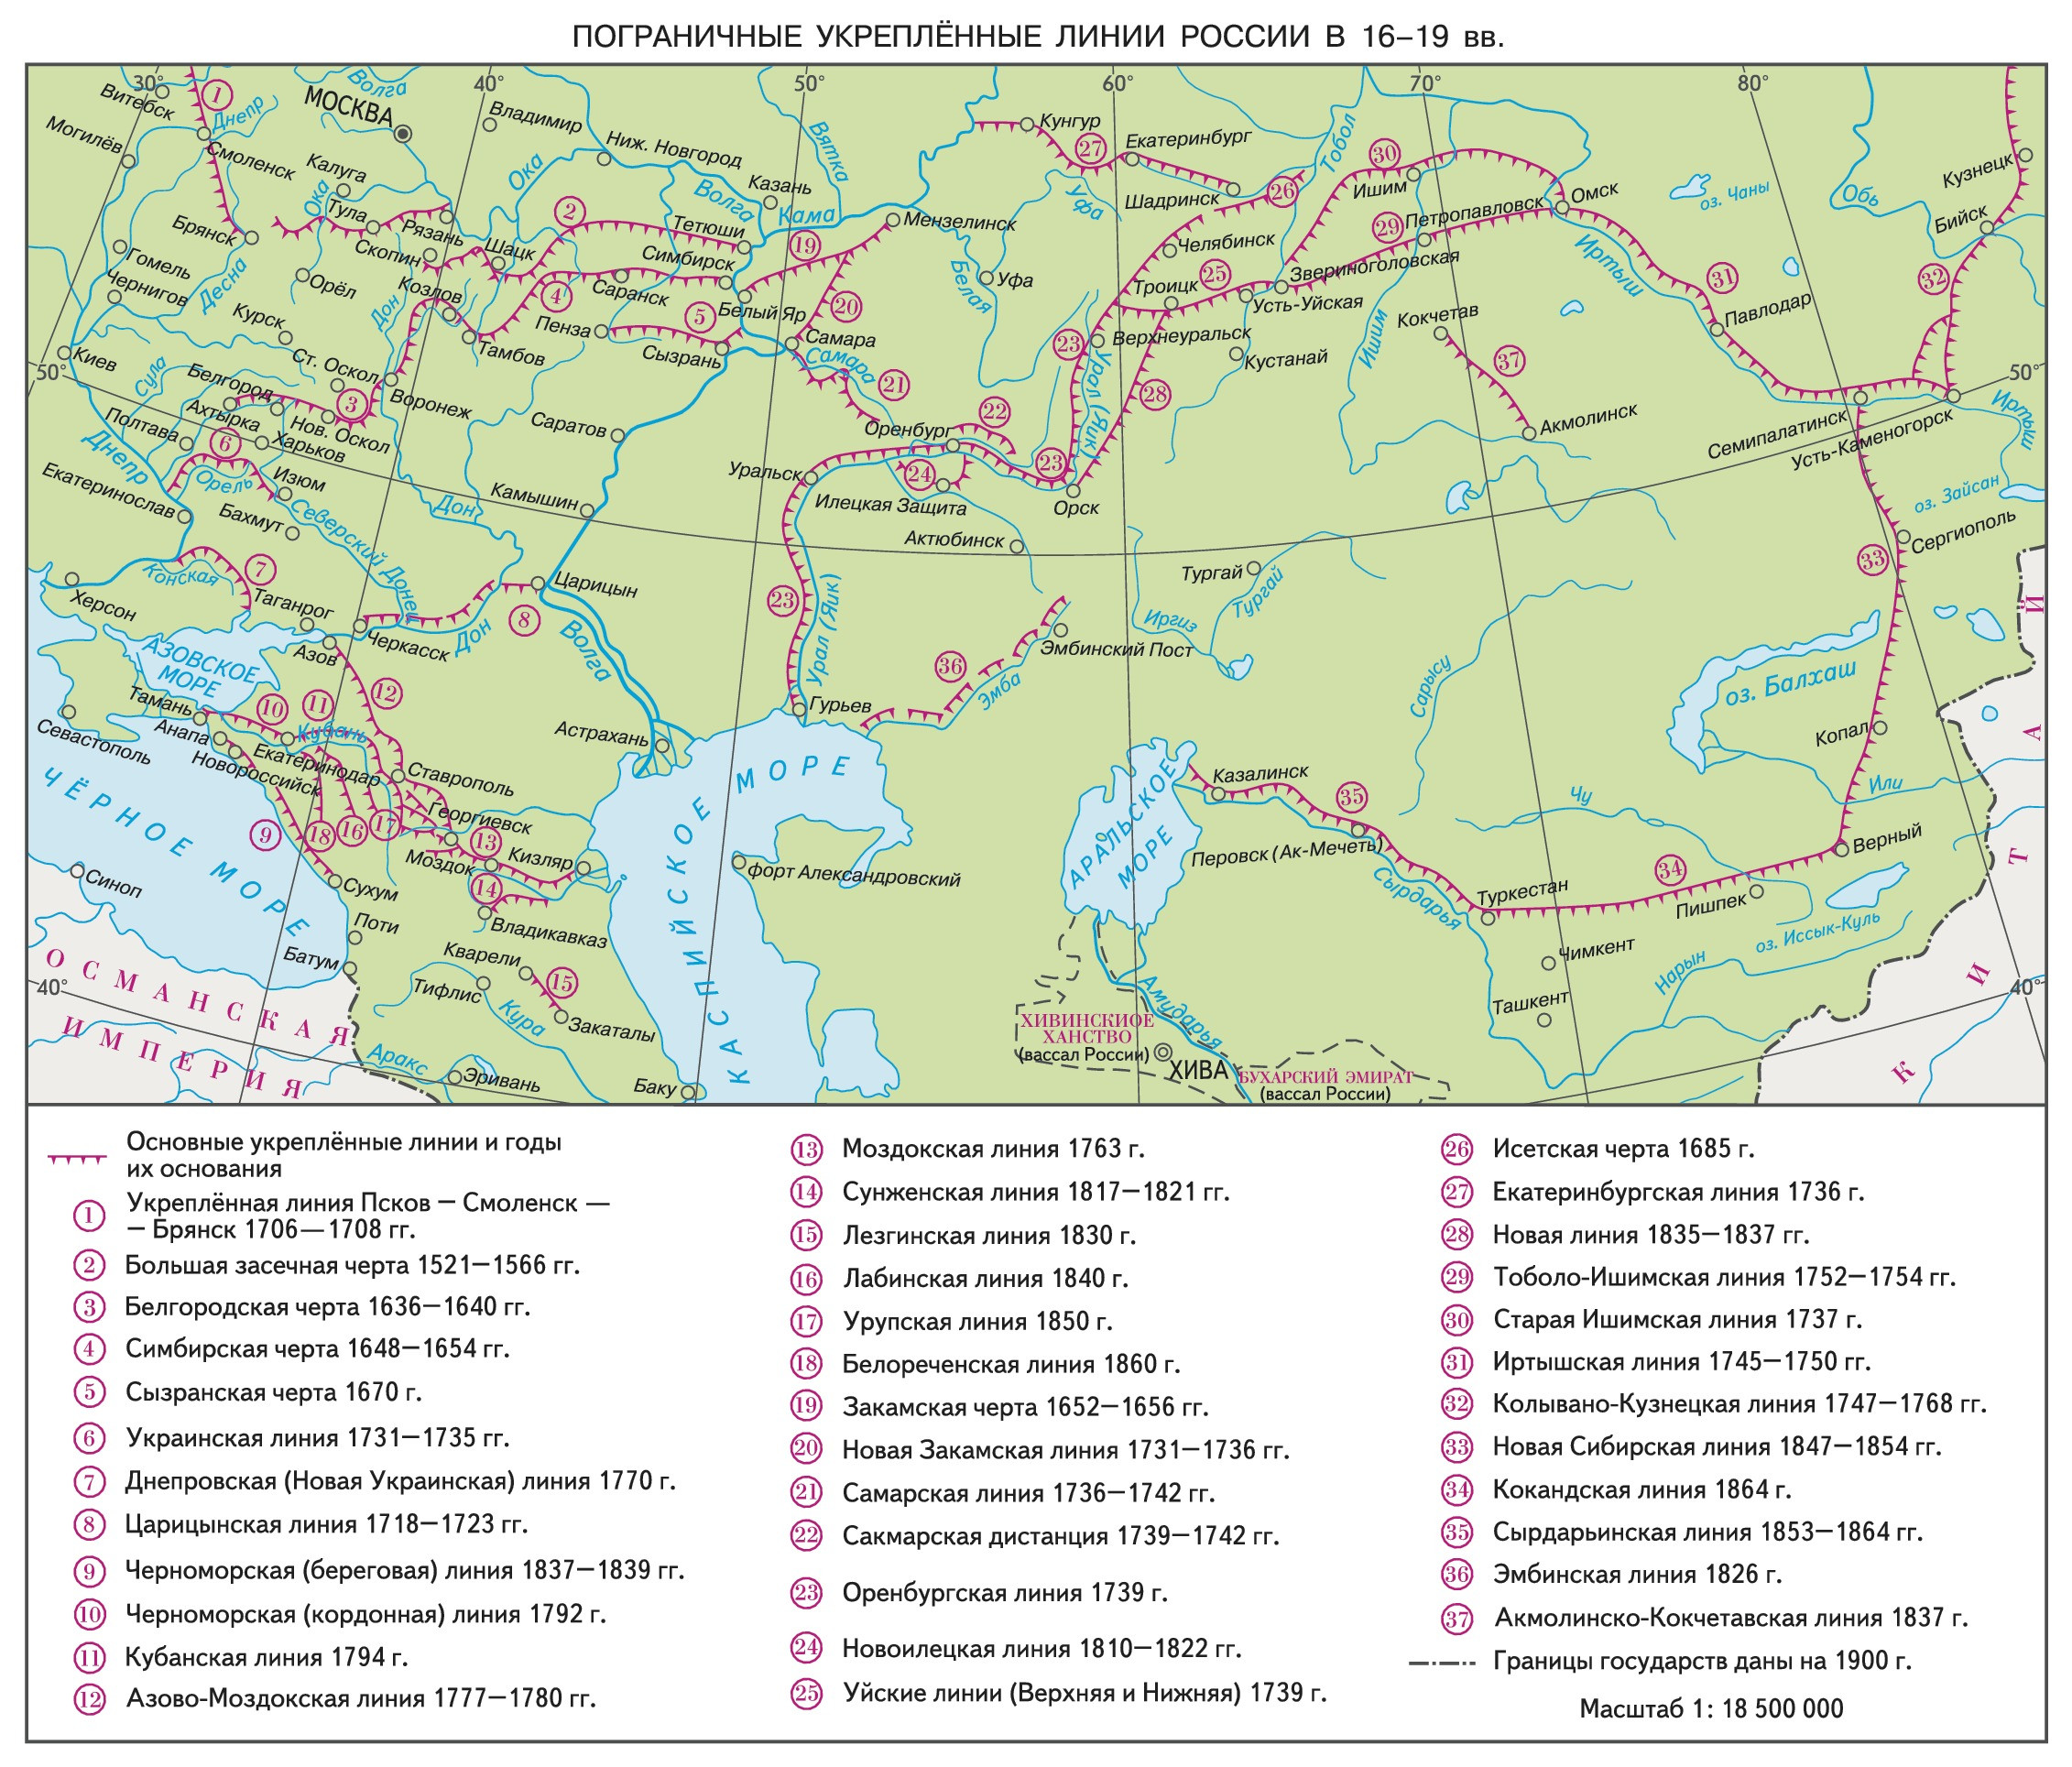 Карта пограничных укреплённых линий в&nbsp;России в&nbsp;XVI-XIX вв.